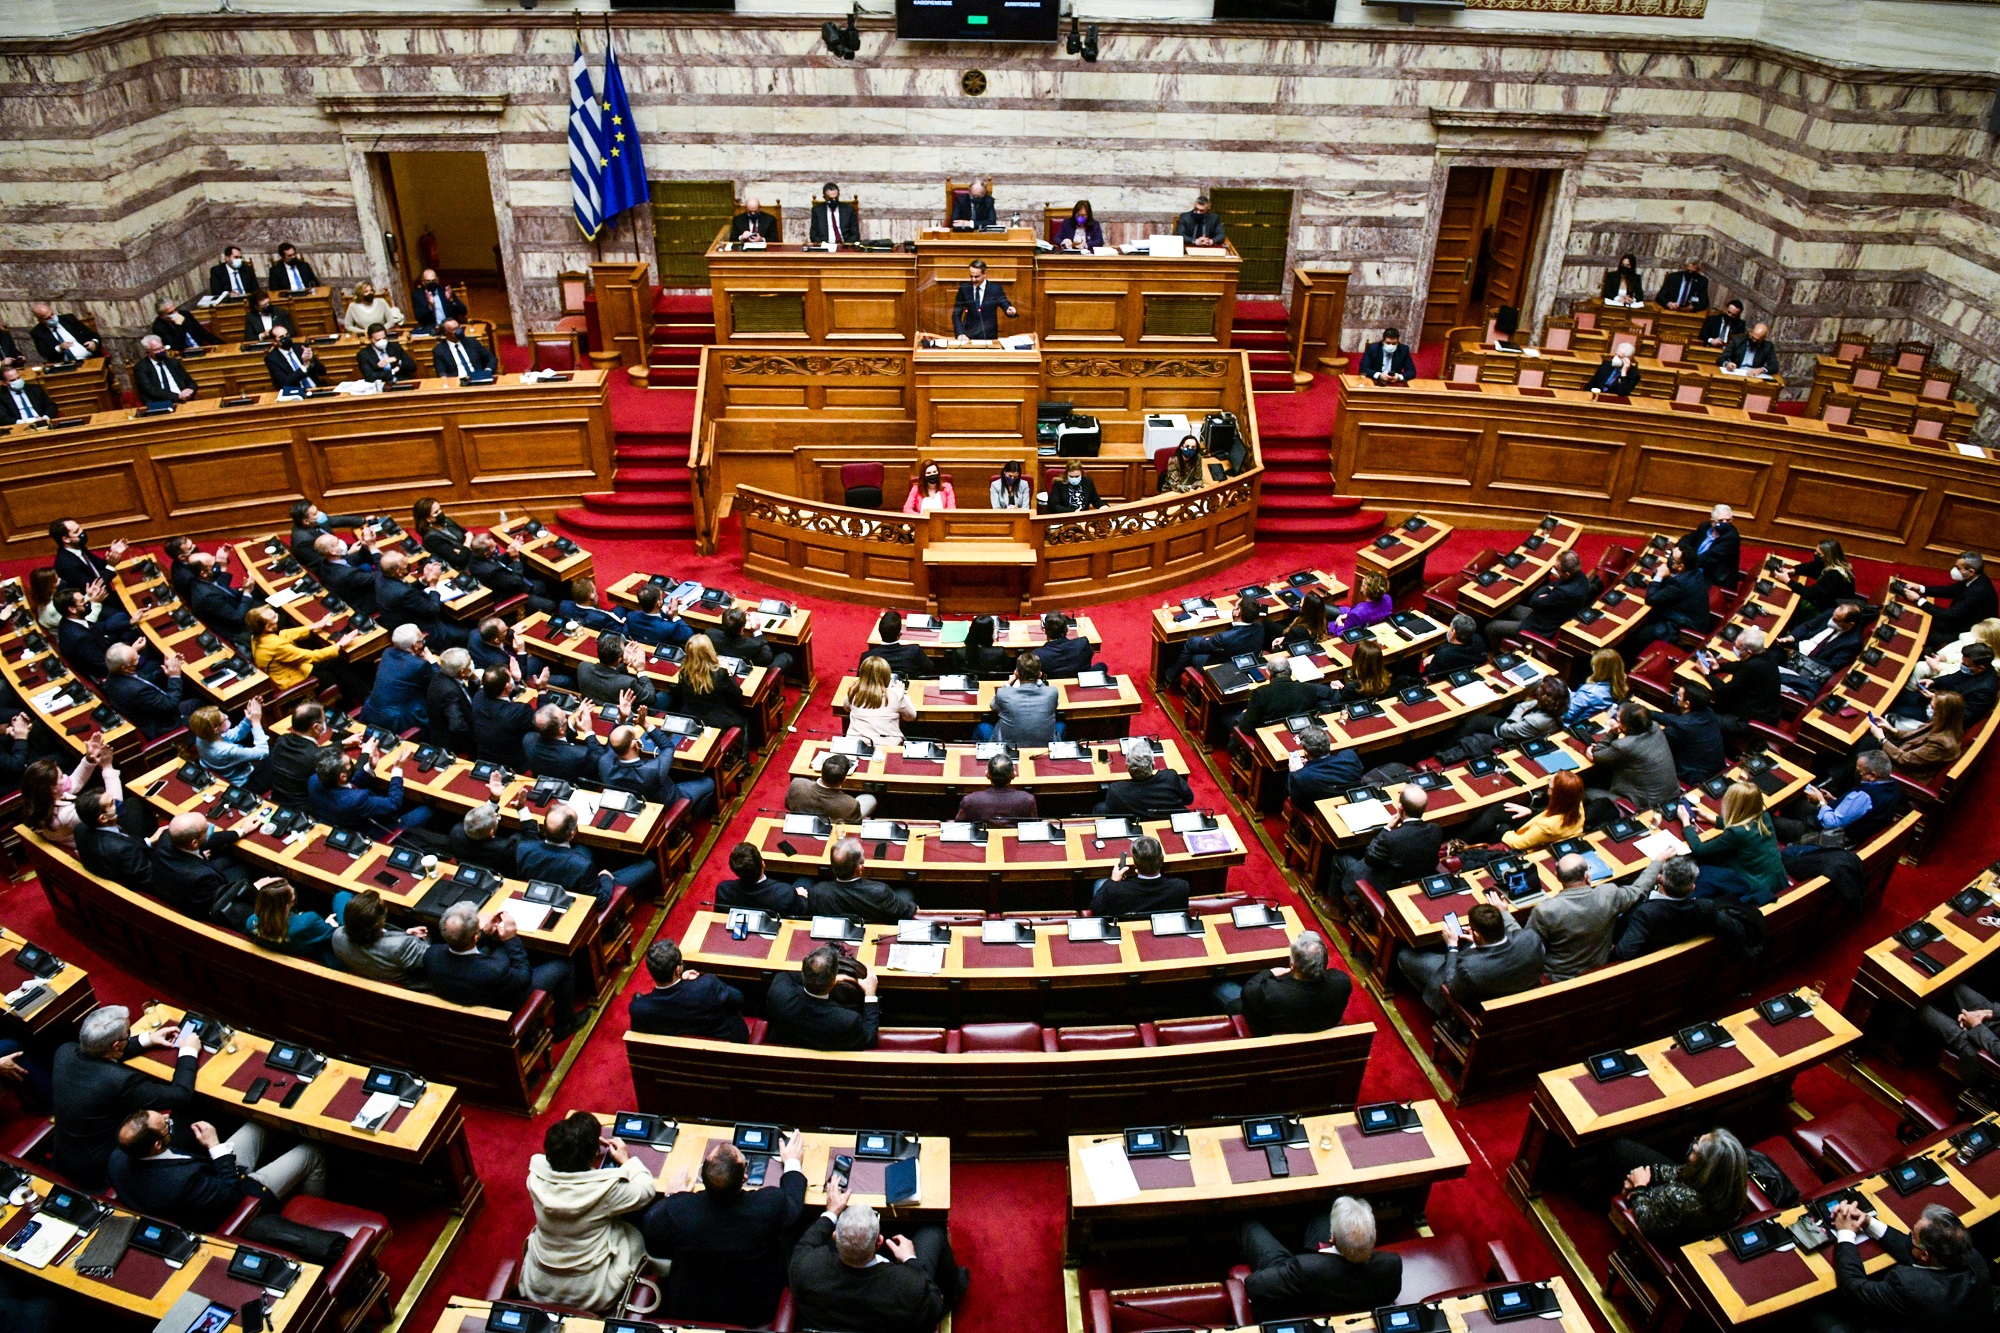 Ψηφίστηκε στη Βουλή το market pass – Οικονόμου: «Θλιβερή εξαίρεση» η στάση του ΣΥΡΙΖΑ που ψήφισε «παρών»